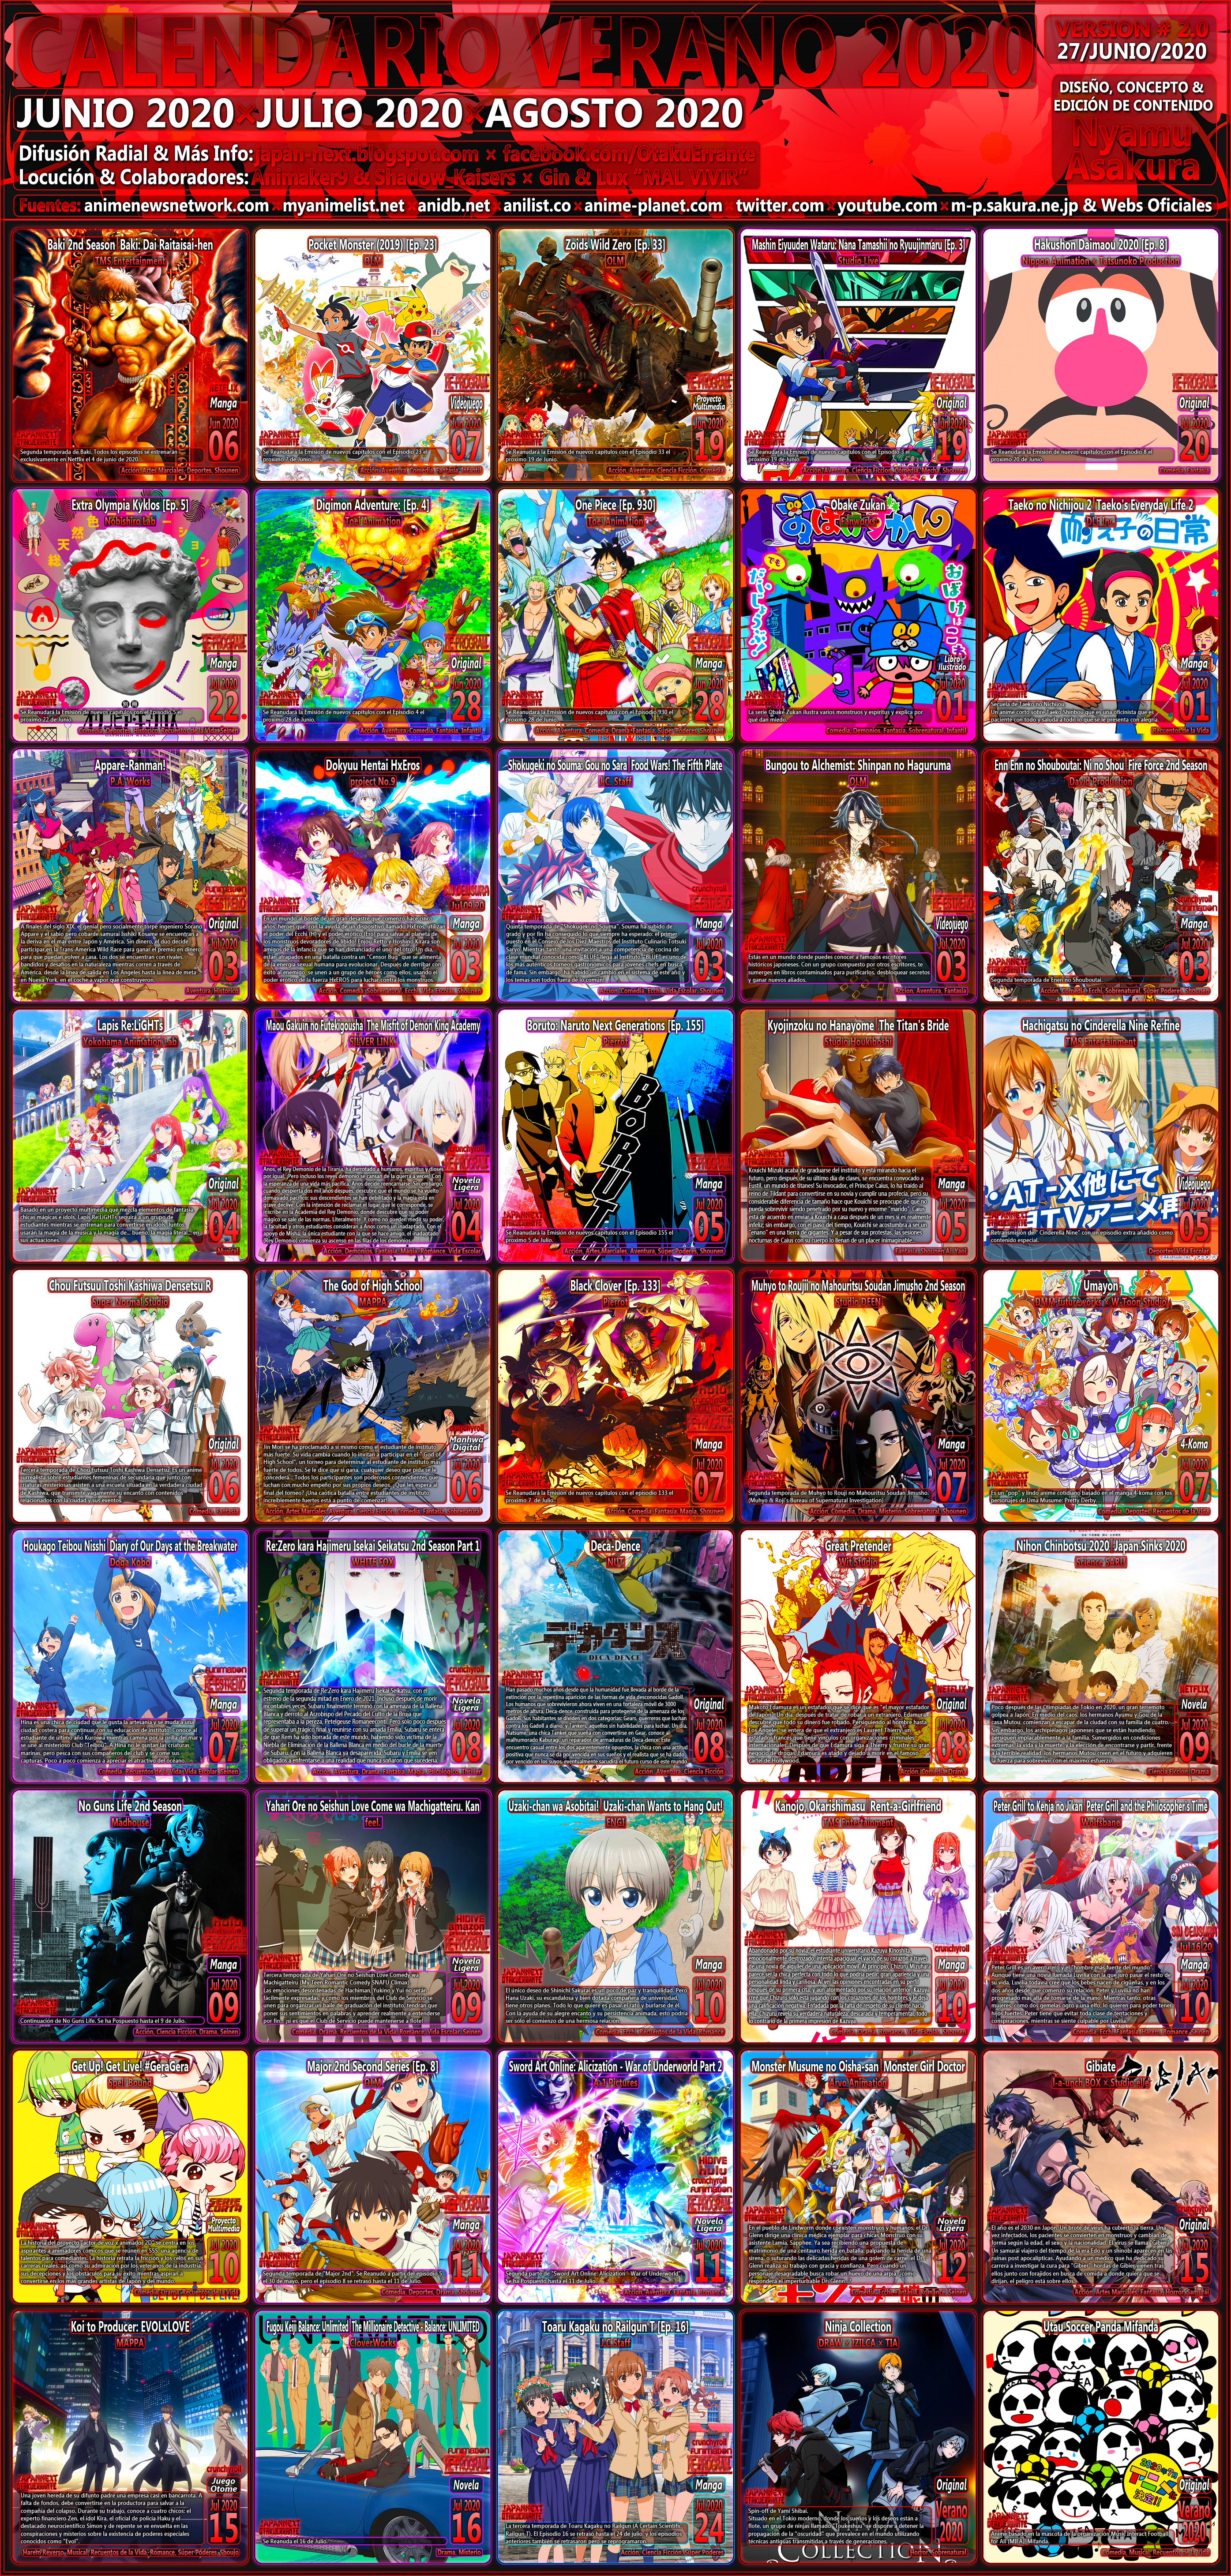 OtakuErrante] Calendario de Estrenos Anime Temporada Verano 2019